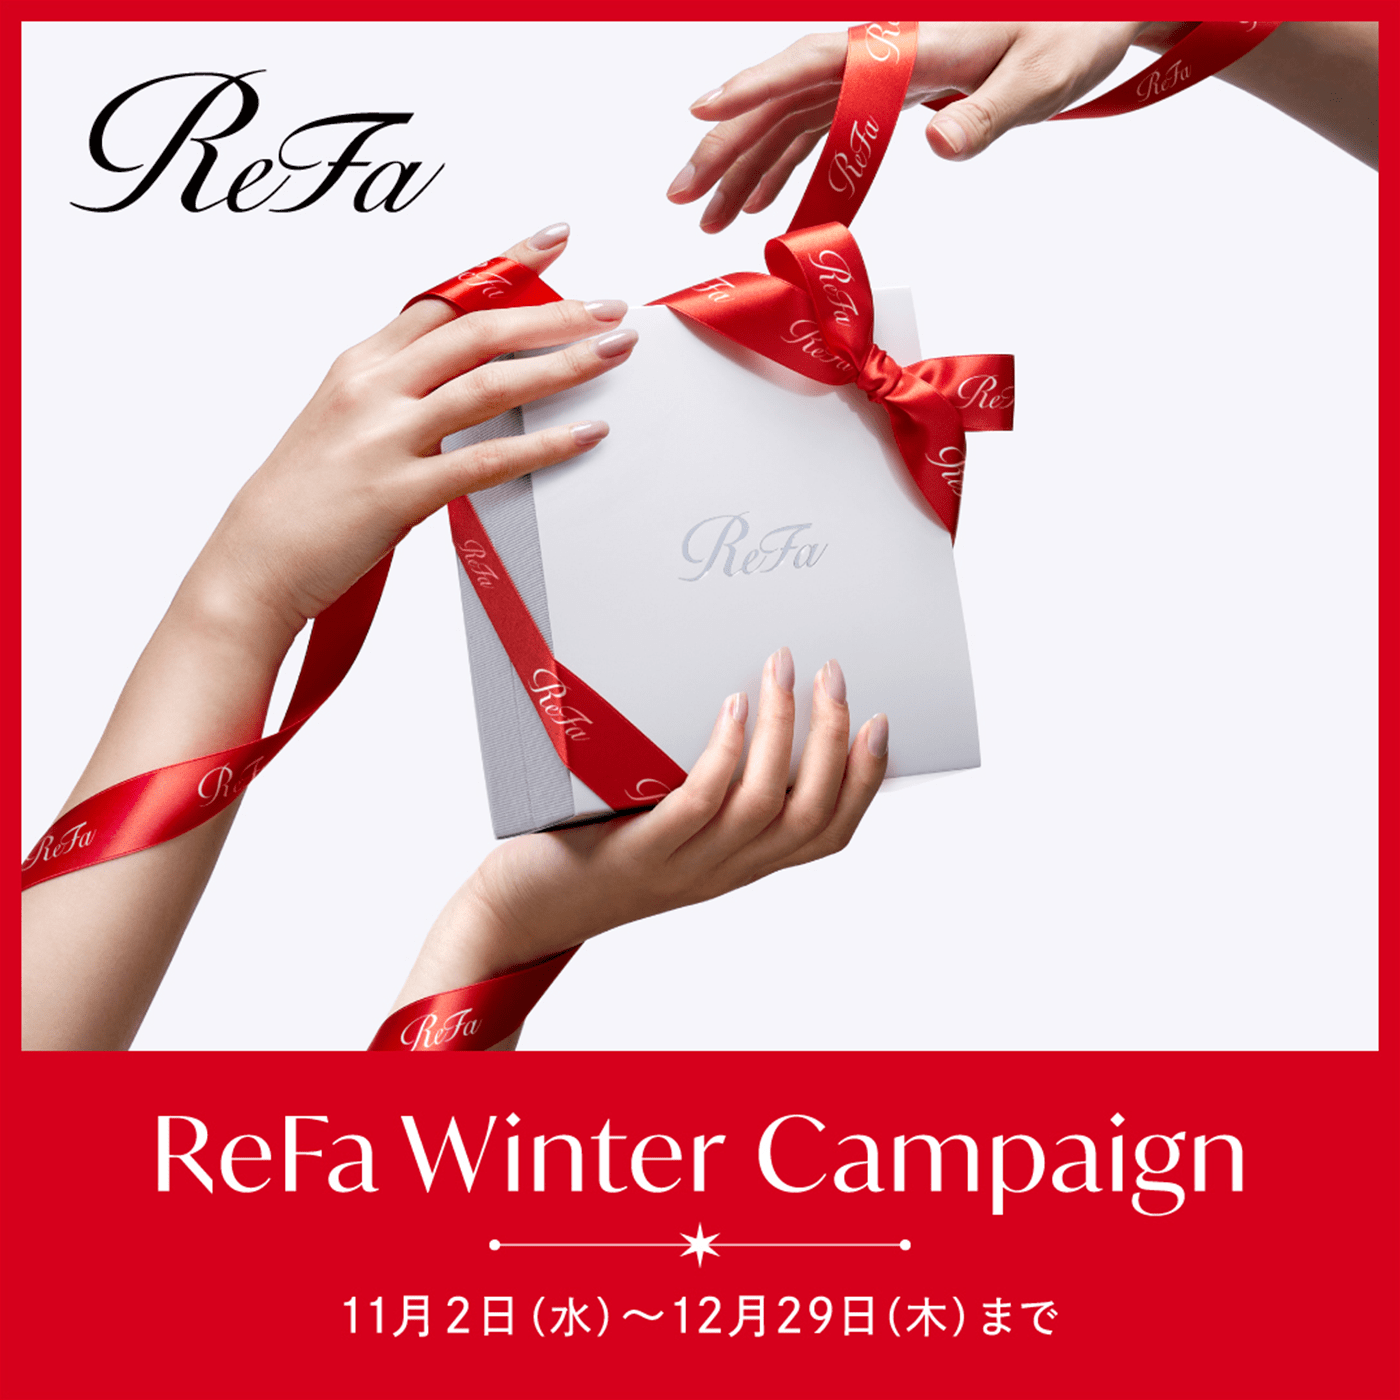 ギフトに人気の美容ブランド「ReFa」が、"BEAUTY SPIRAL, HAPPY SPIRAL"をテーマに2022 ReFa Winter Campaignを実施